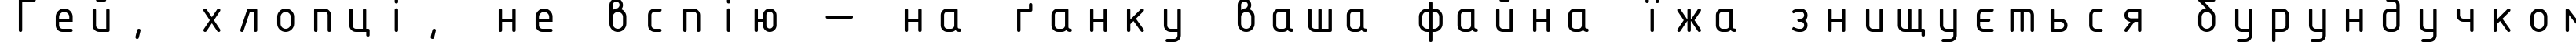 Пример написания шрифтом ISOCTEUR текста на украинском